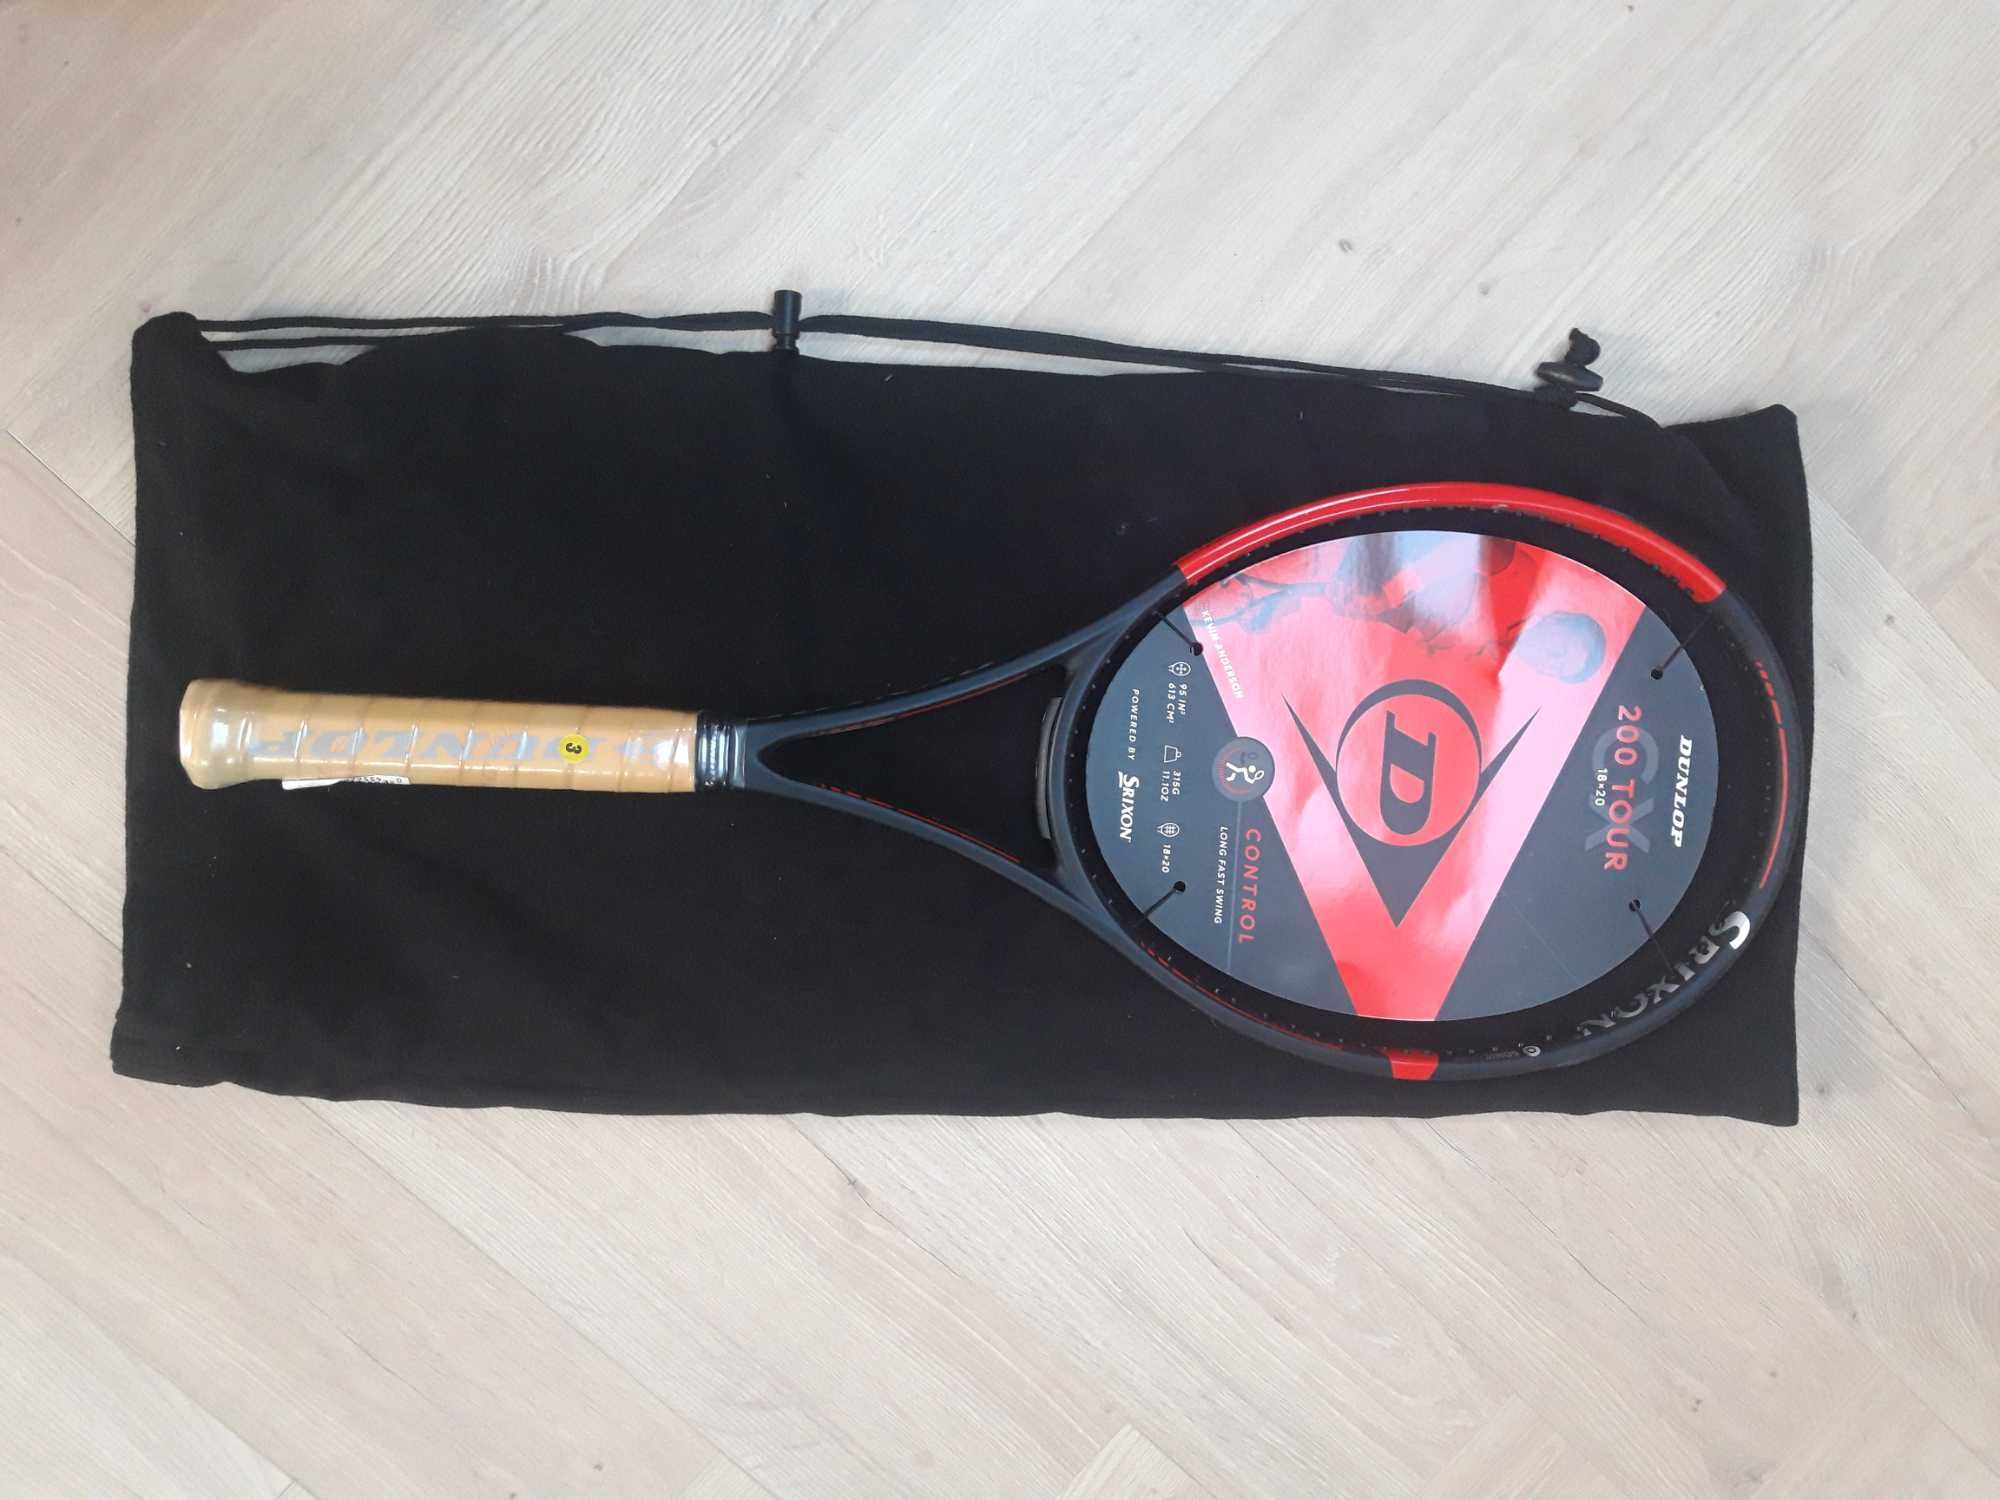 Dunlop rakieta tenisowa